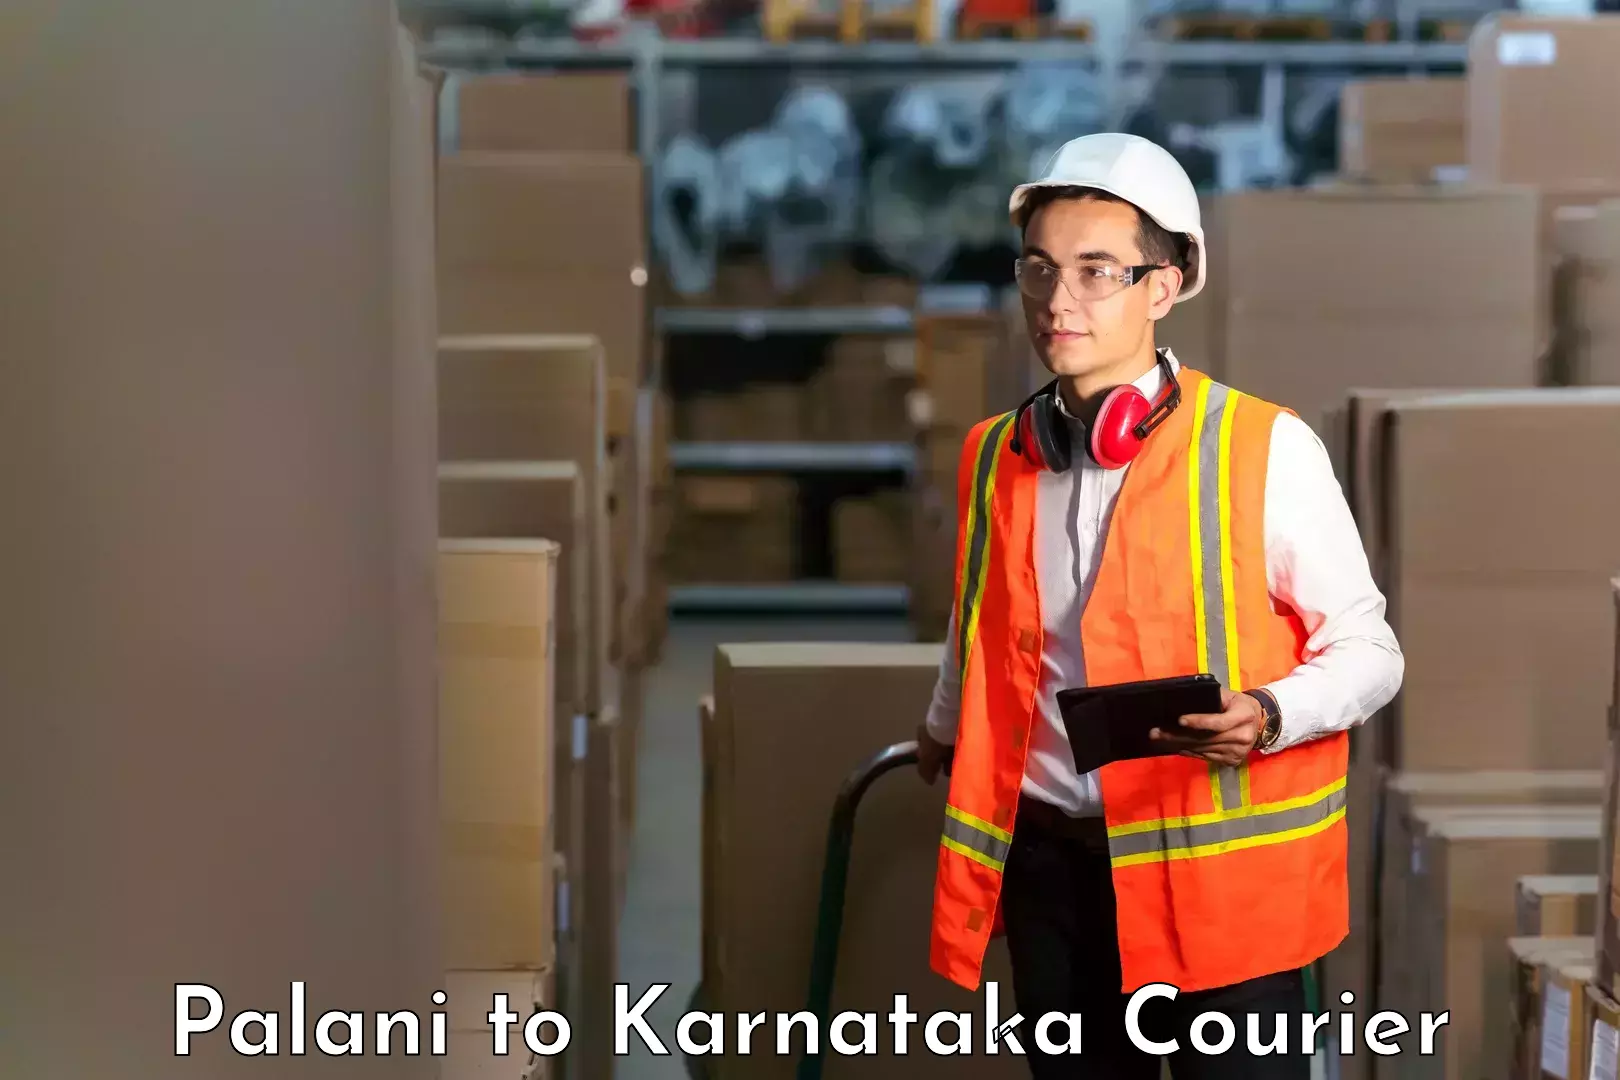 Full-service courier options Palani to Jamkhandi